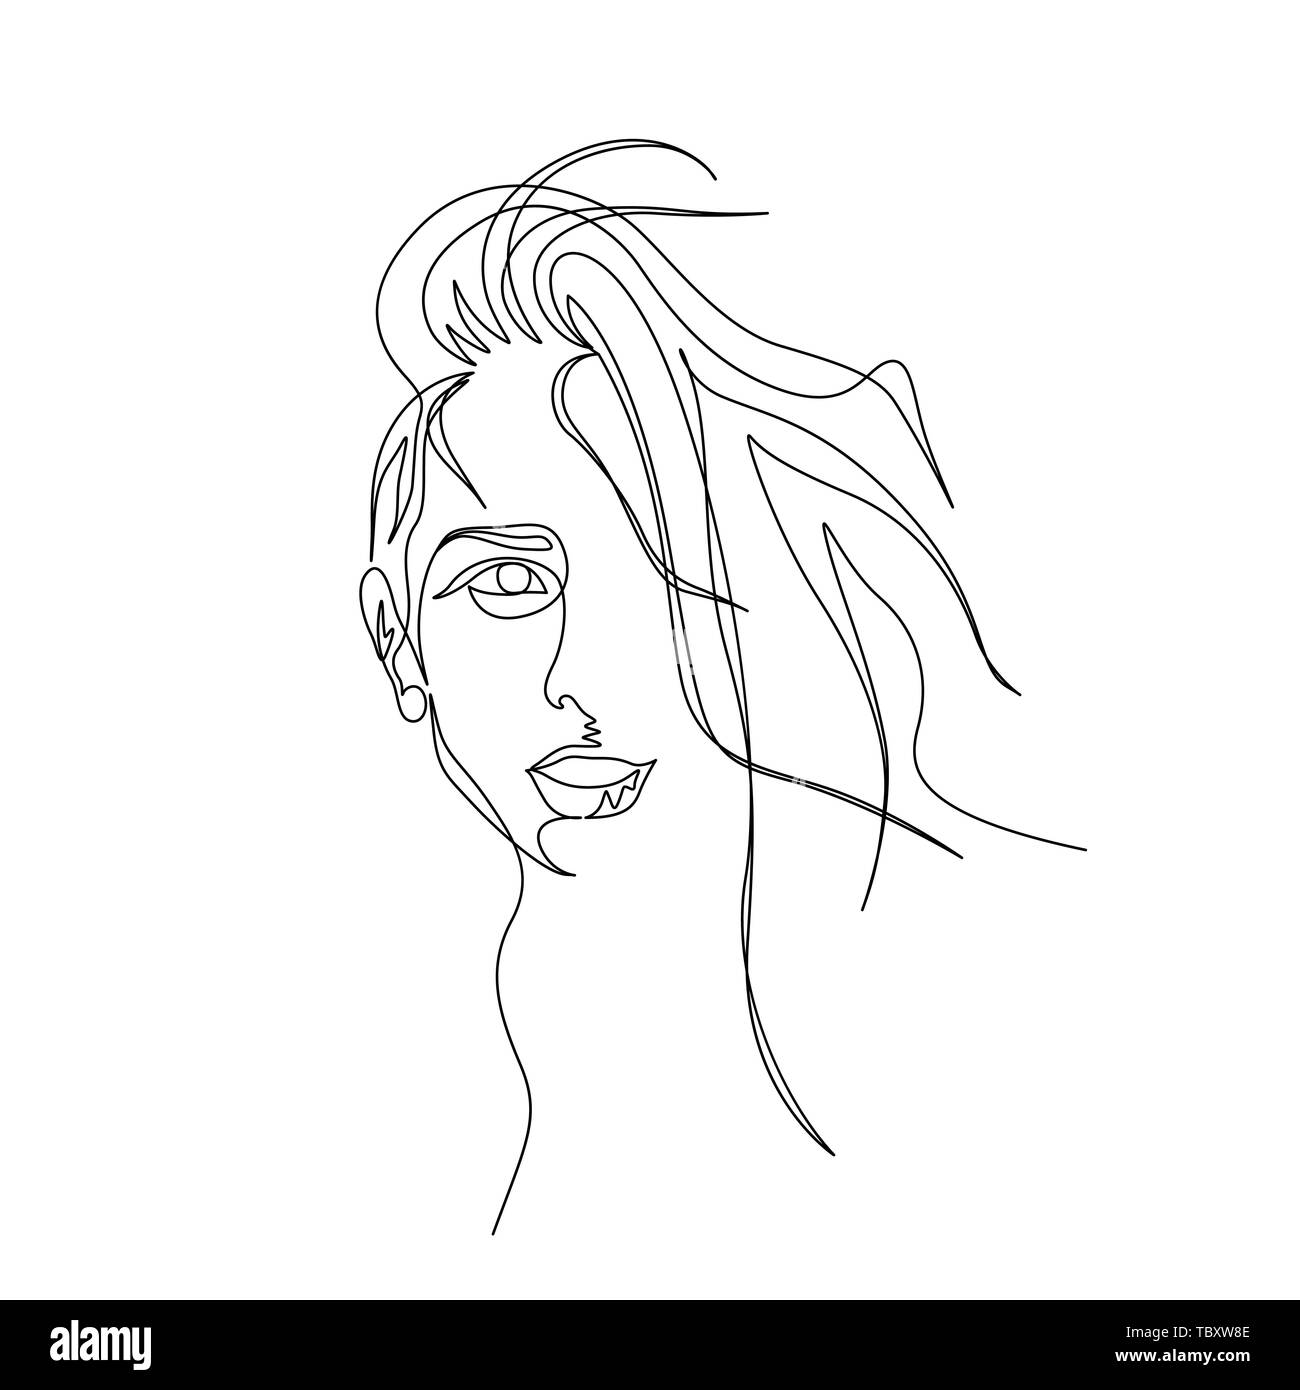 Continua linea di un ritratto di donna con bellissimi capelli lunghi. Arte Illustrazione Vettoriale